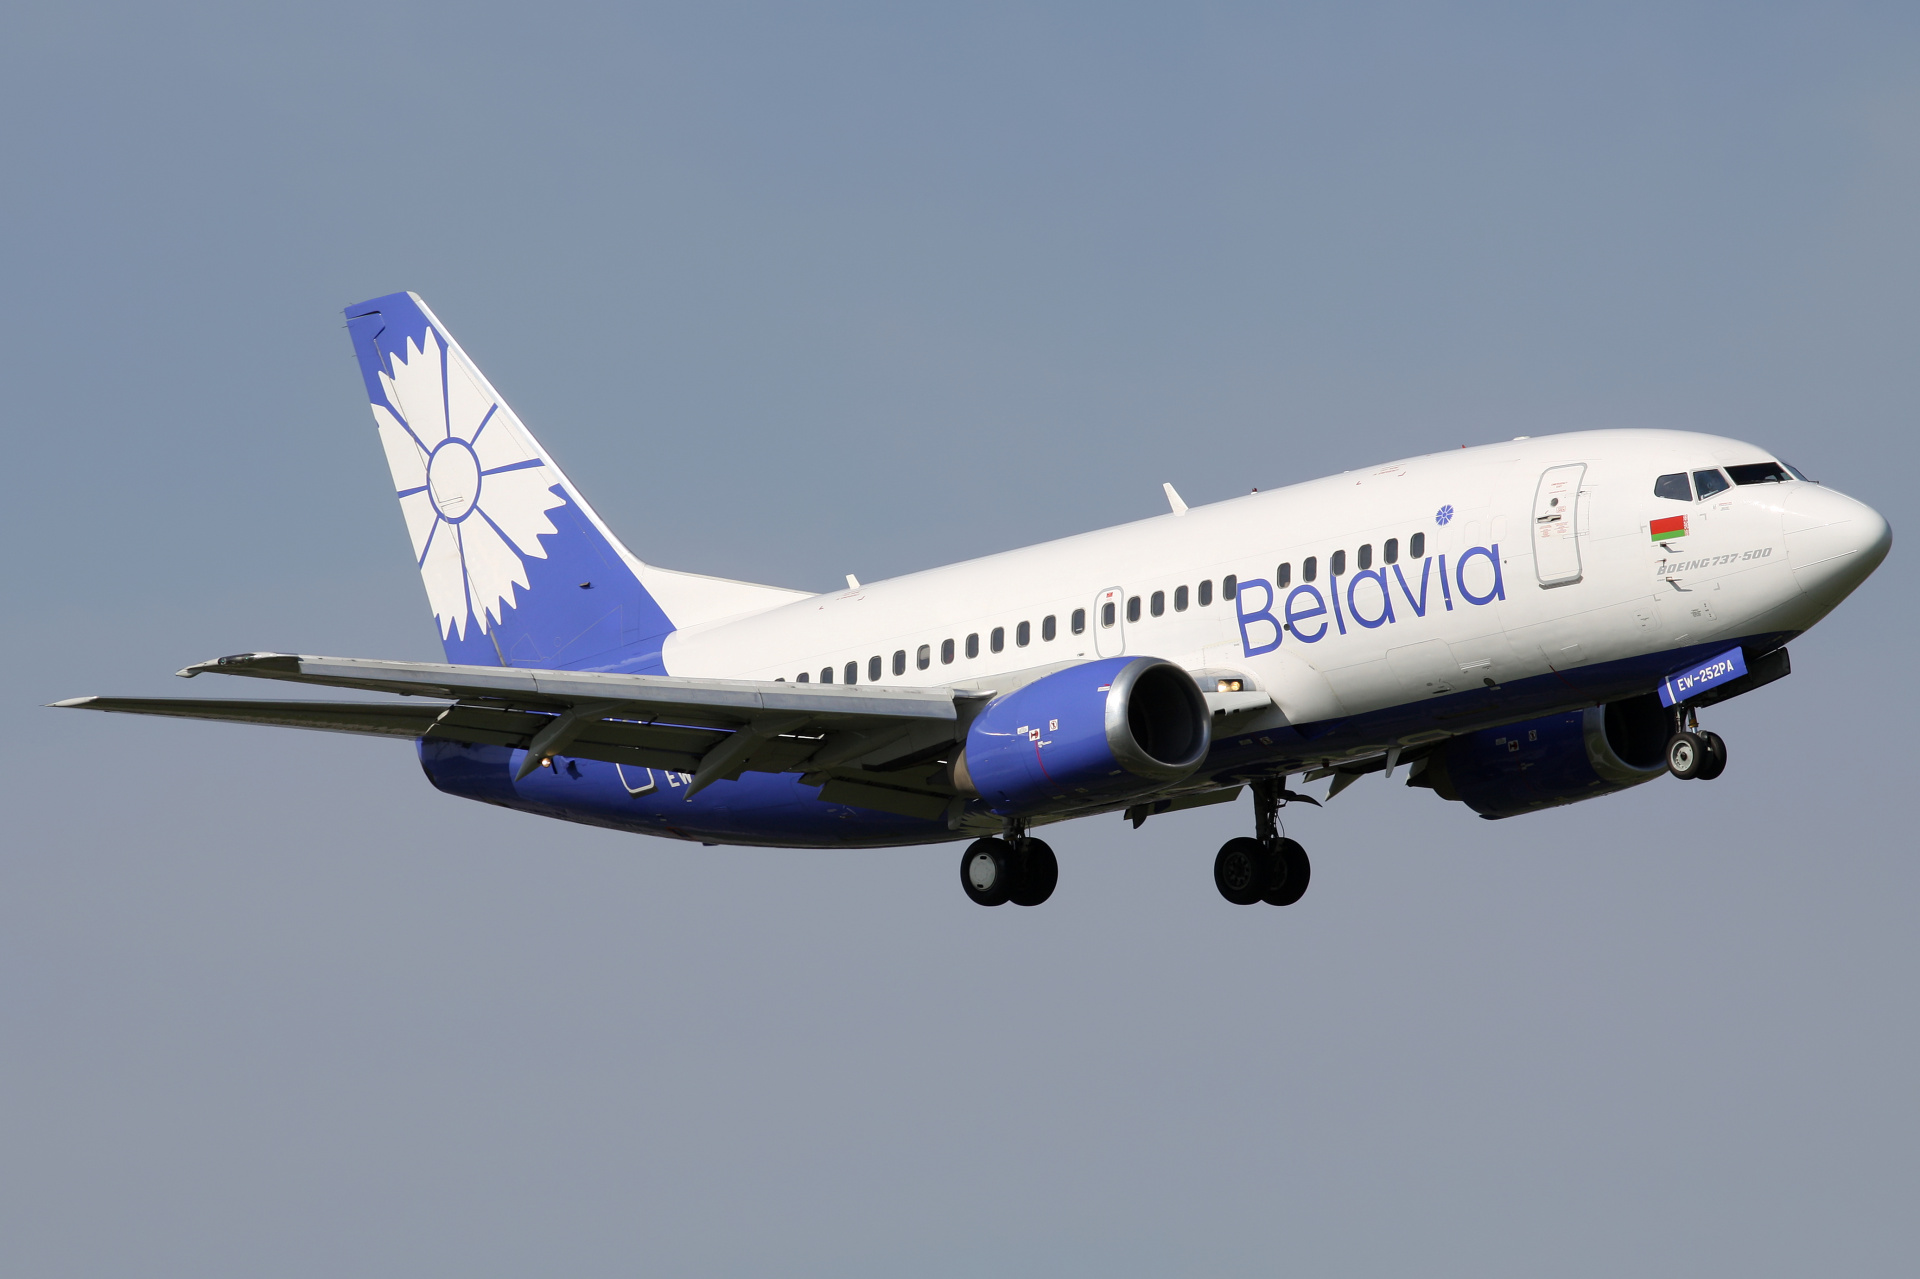 EW-252PA (new livery) (Aircraft » EPWA Spotting » Boeing 737-500 » Belavia)